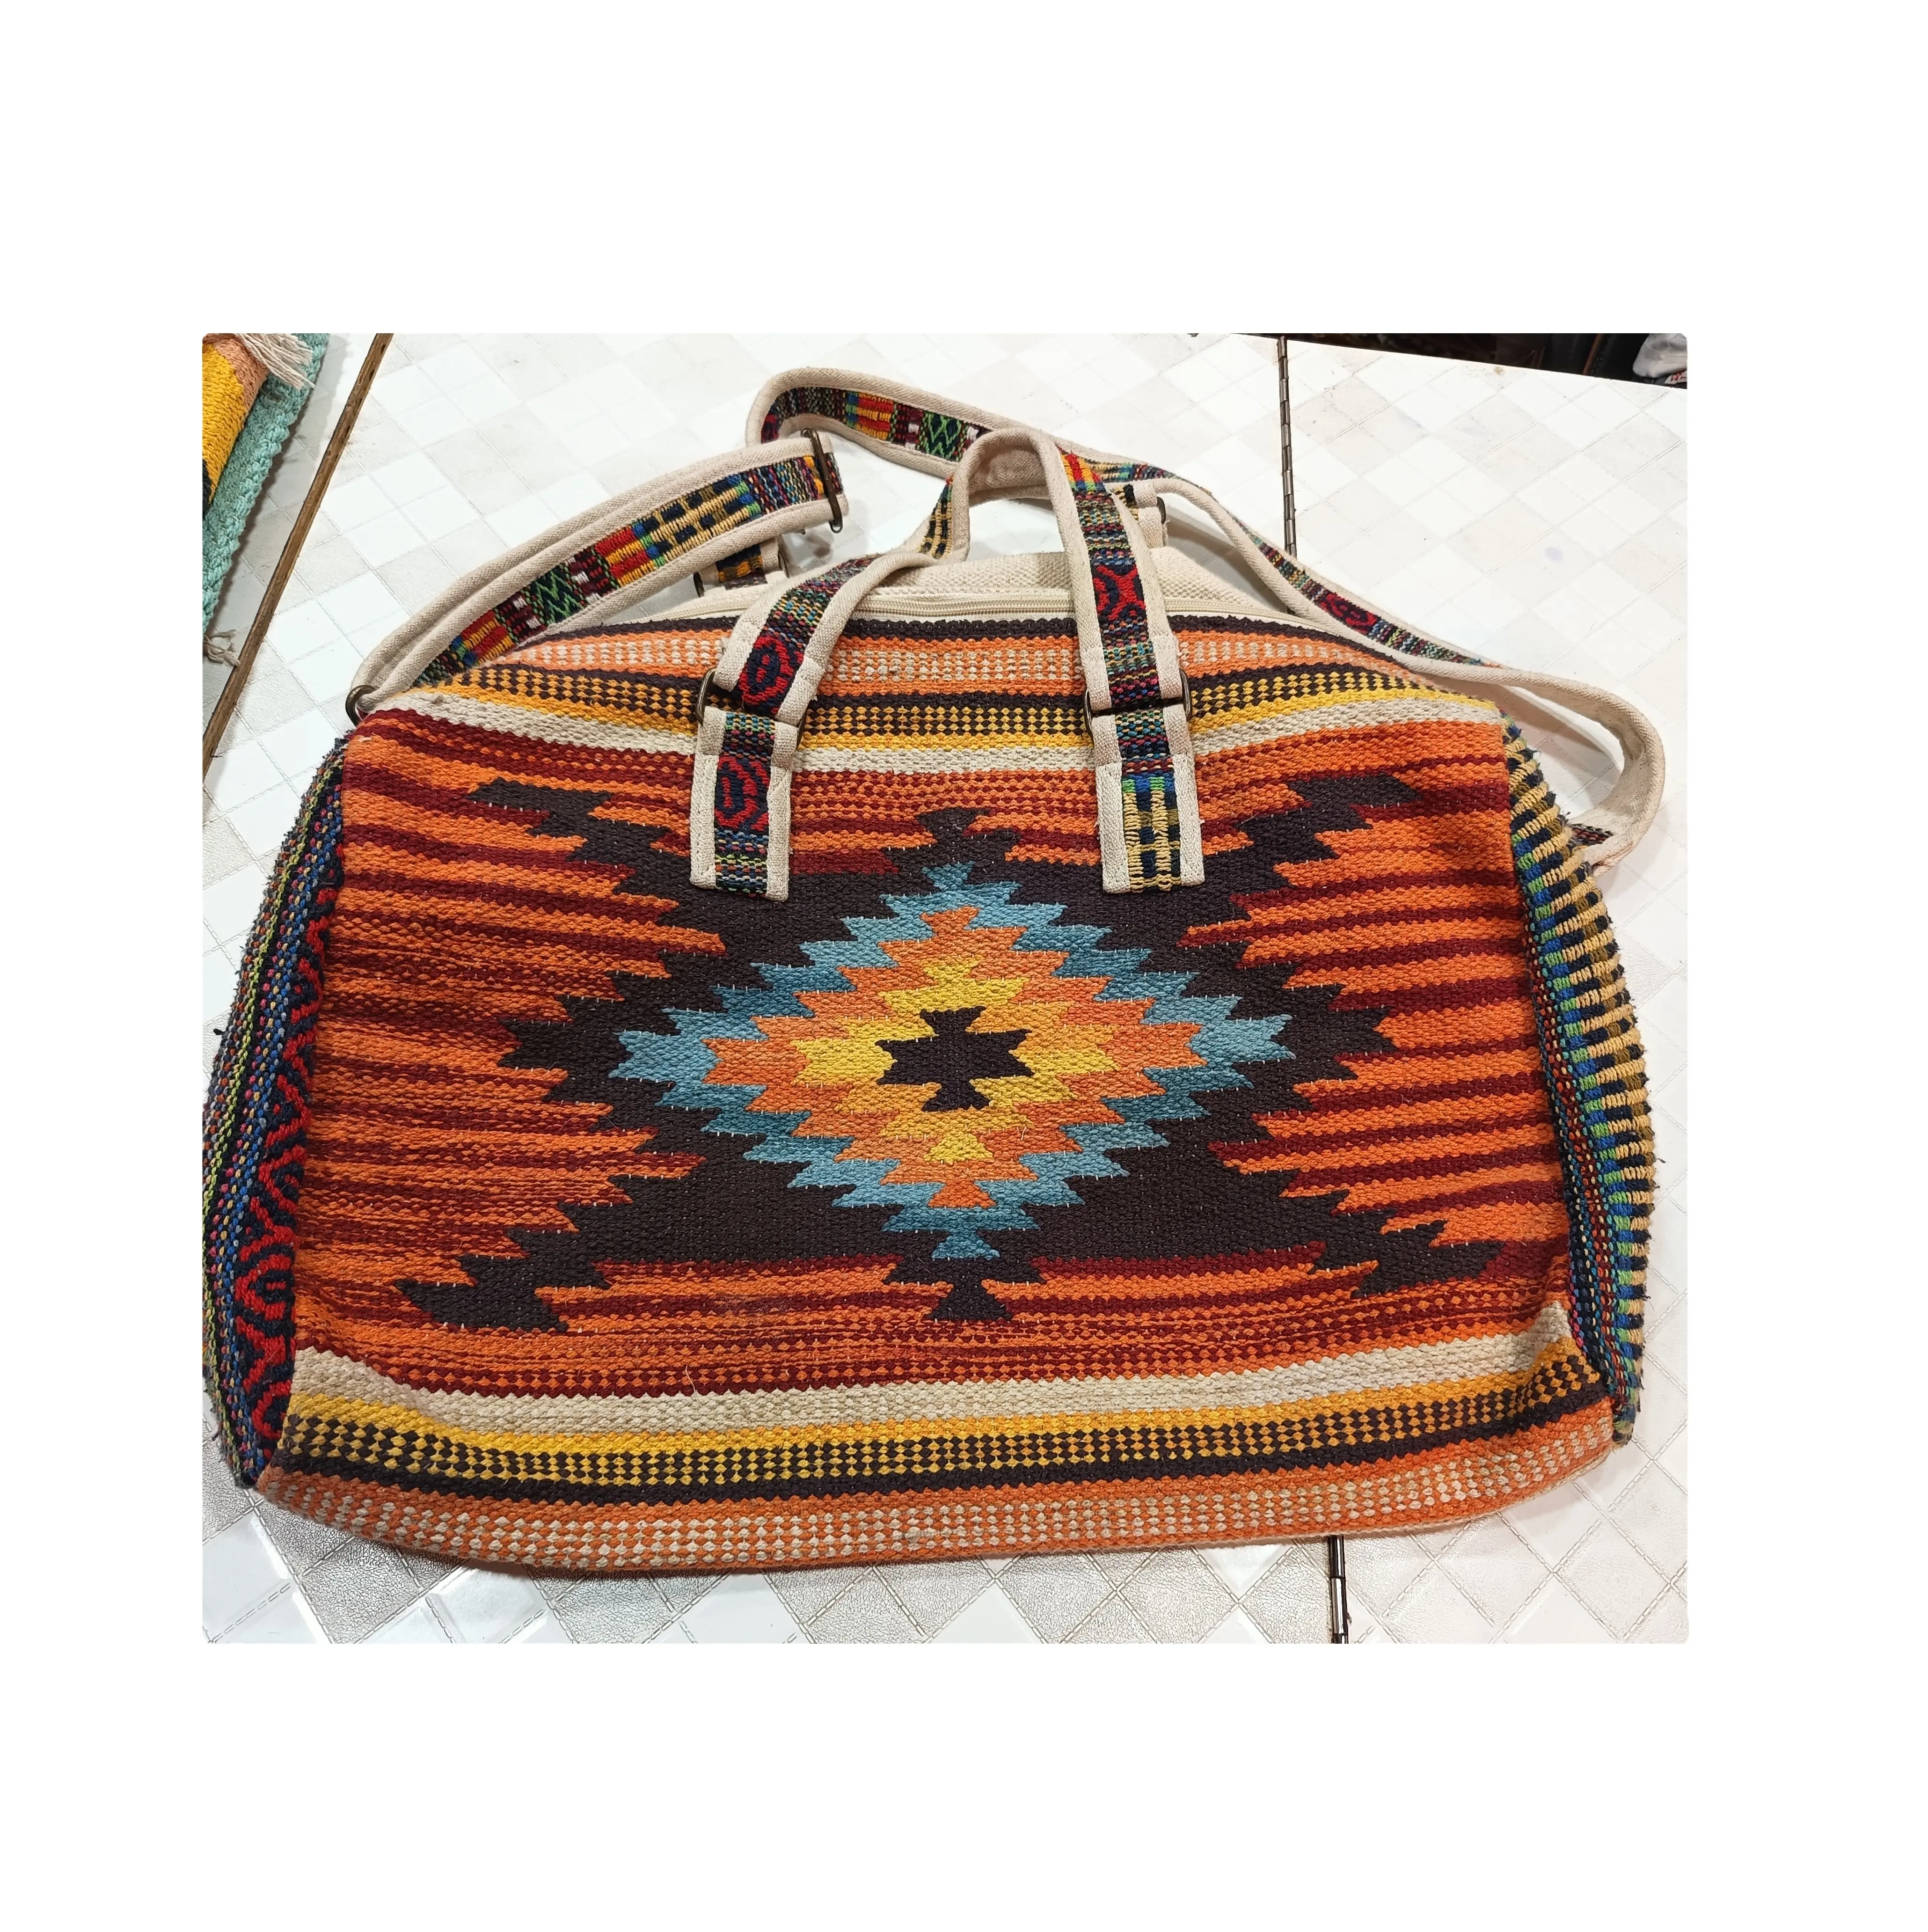 Лучшее качество, индийские сумки ручной работы, хлопковые сумки-тоут для повседневного использования, разных цветов и размеров